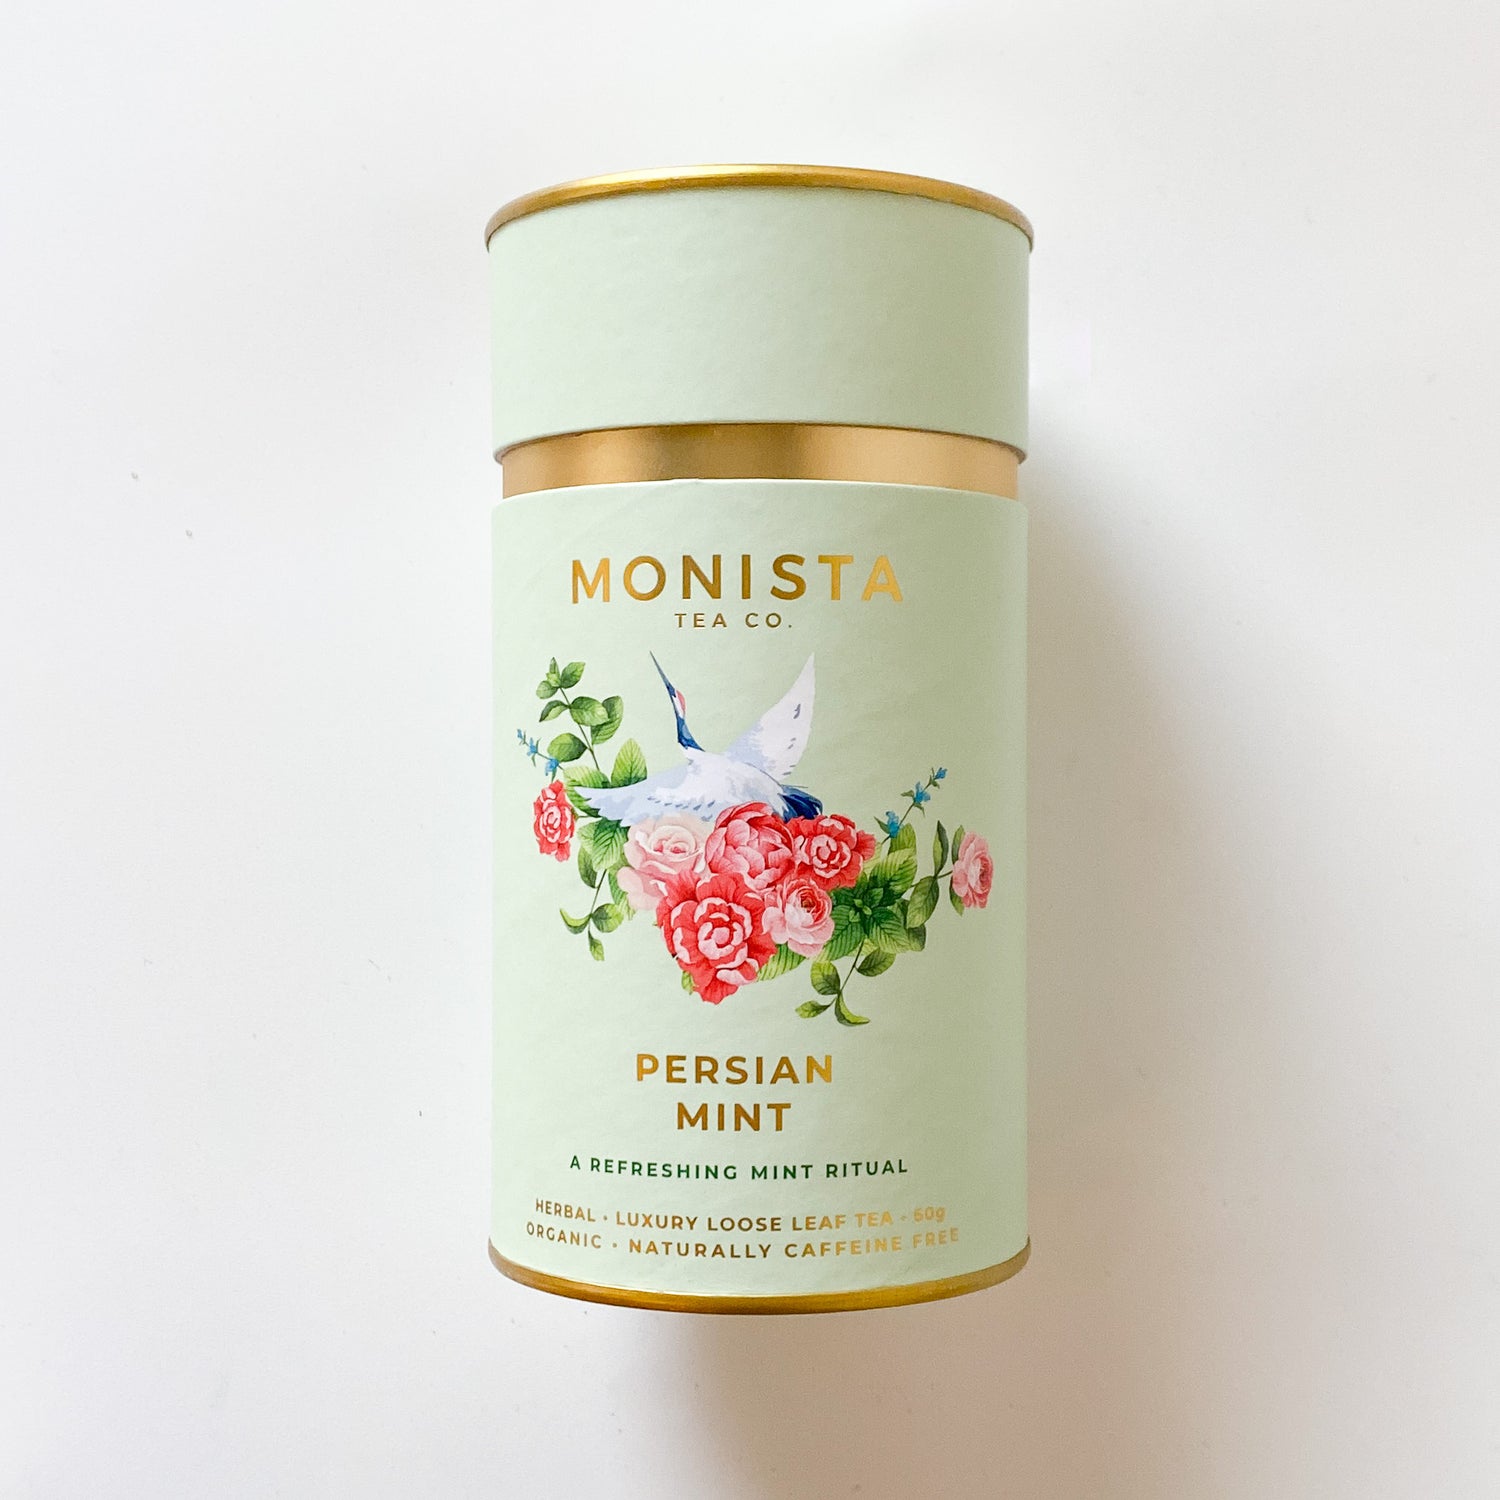 Loose Leaf Tea by Monista Tea Co.